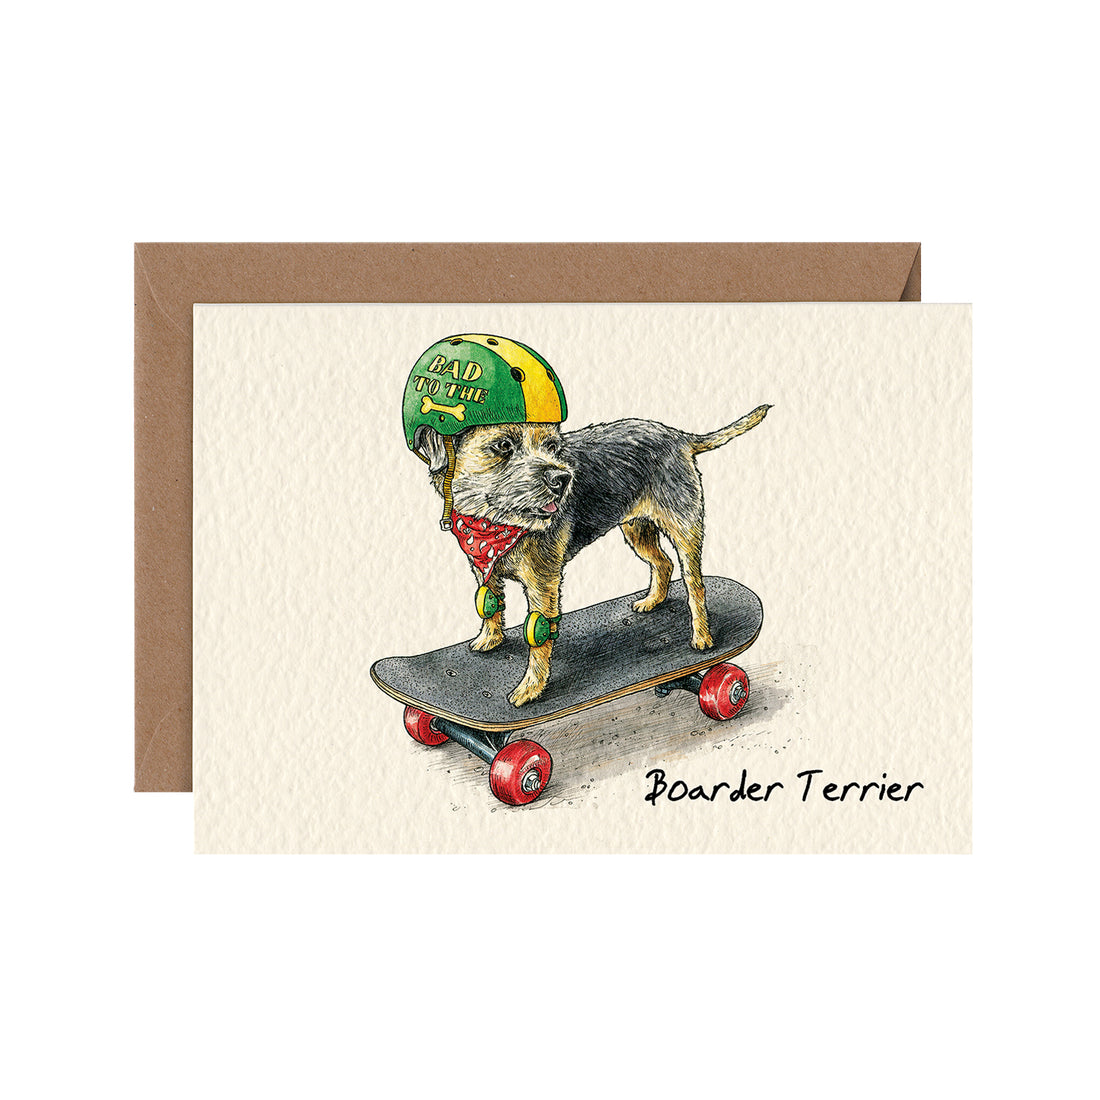 Boarder Terrier Card